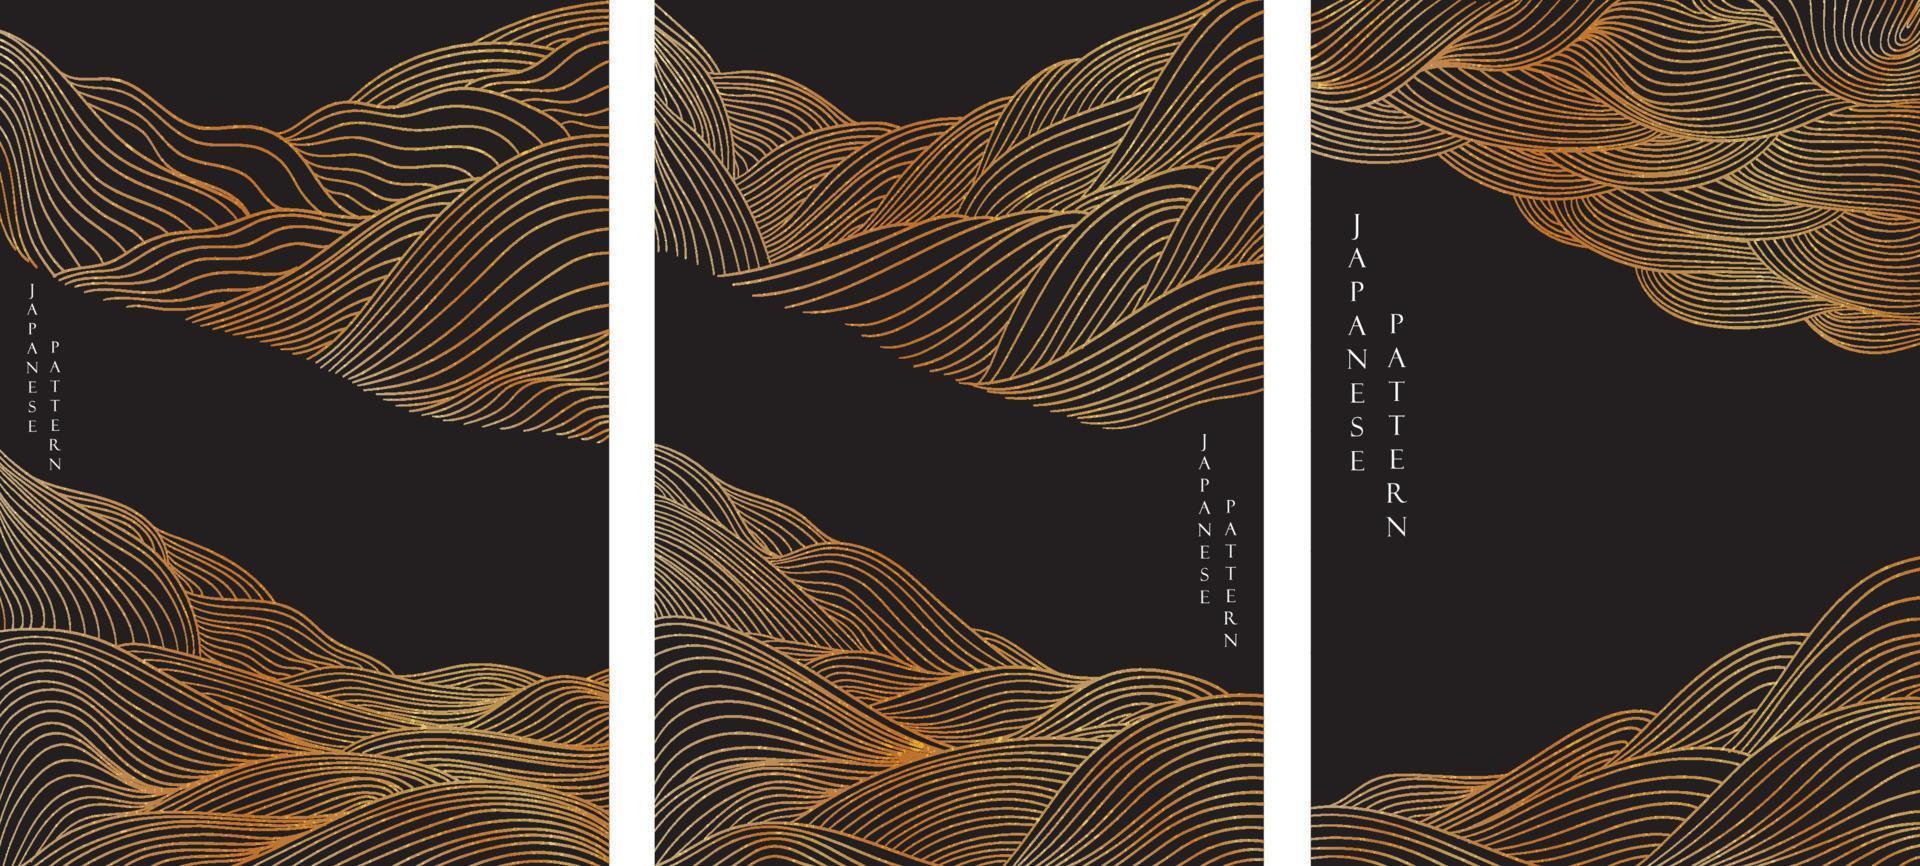 abstrato com vetor de padrão de linha de ouro. elementos de onda japonesa em estilo oriental.